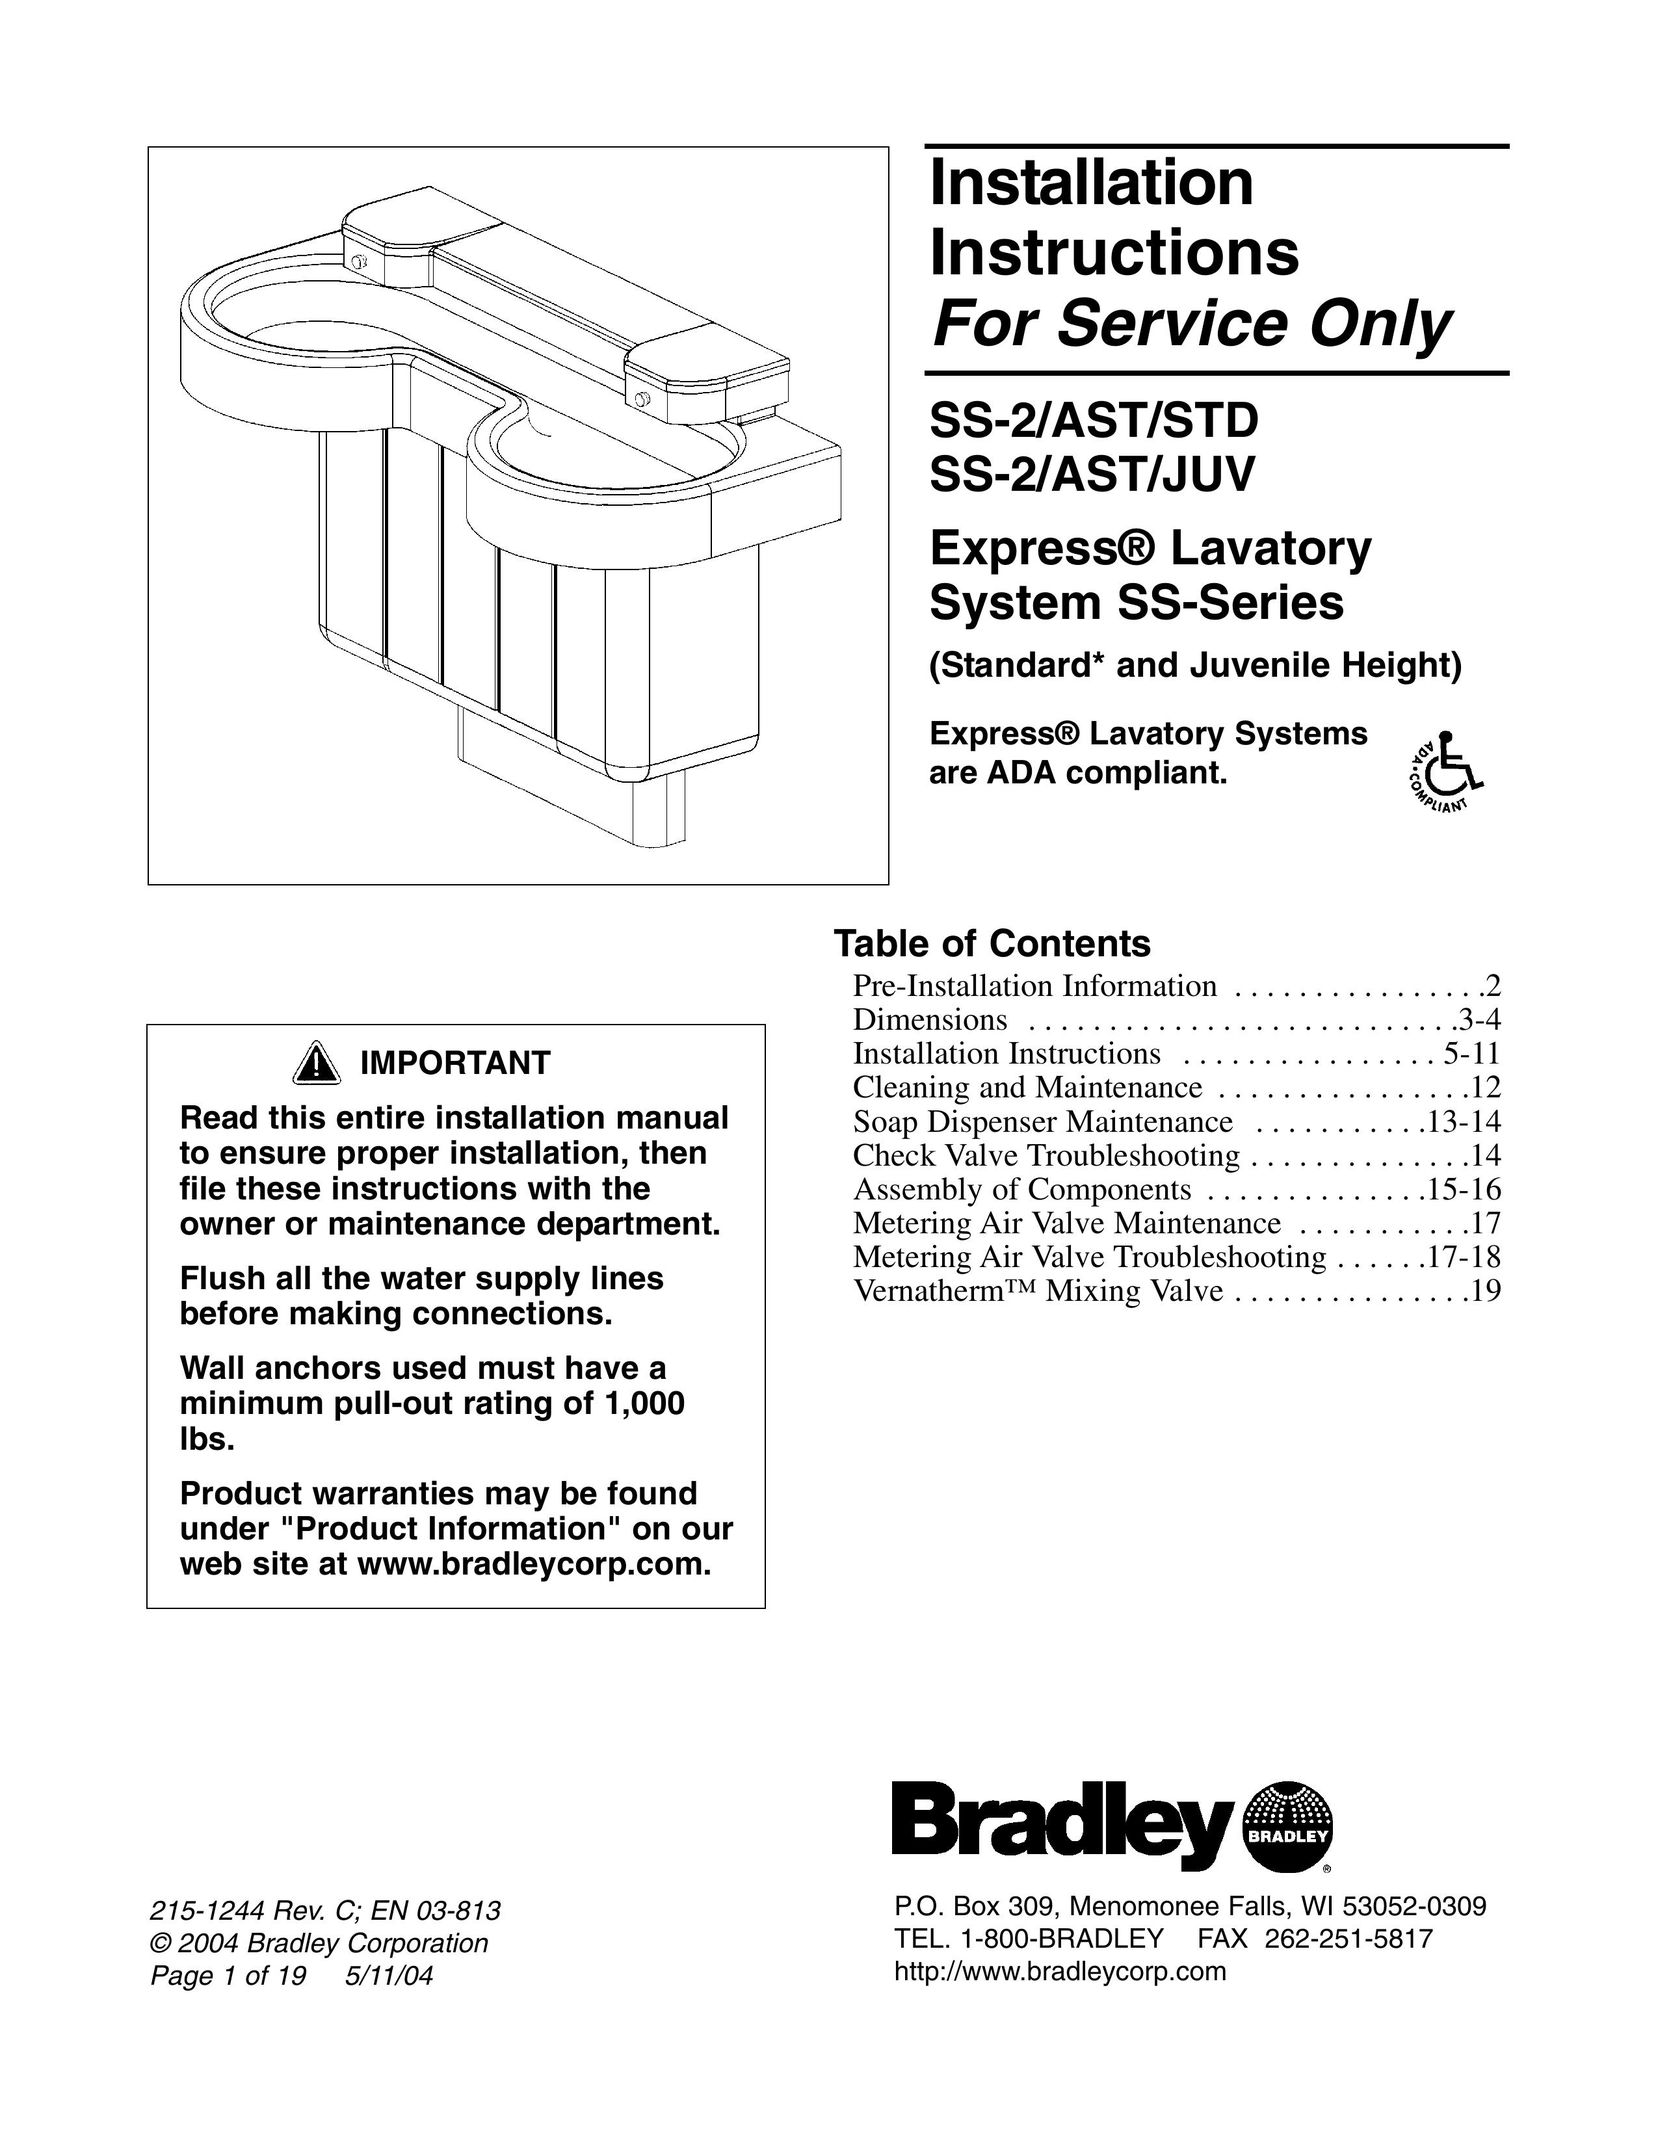 Bradley Smoker SS-2/AST/JUV Plumbing Product User Manual